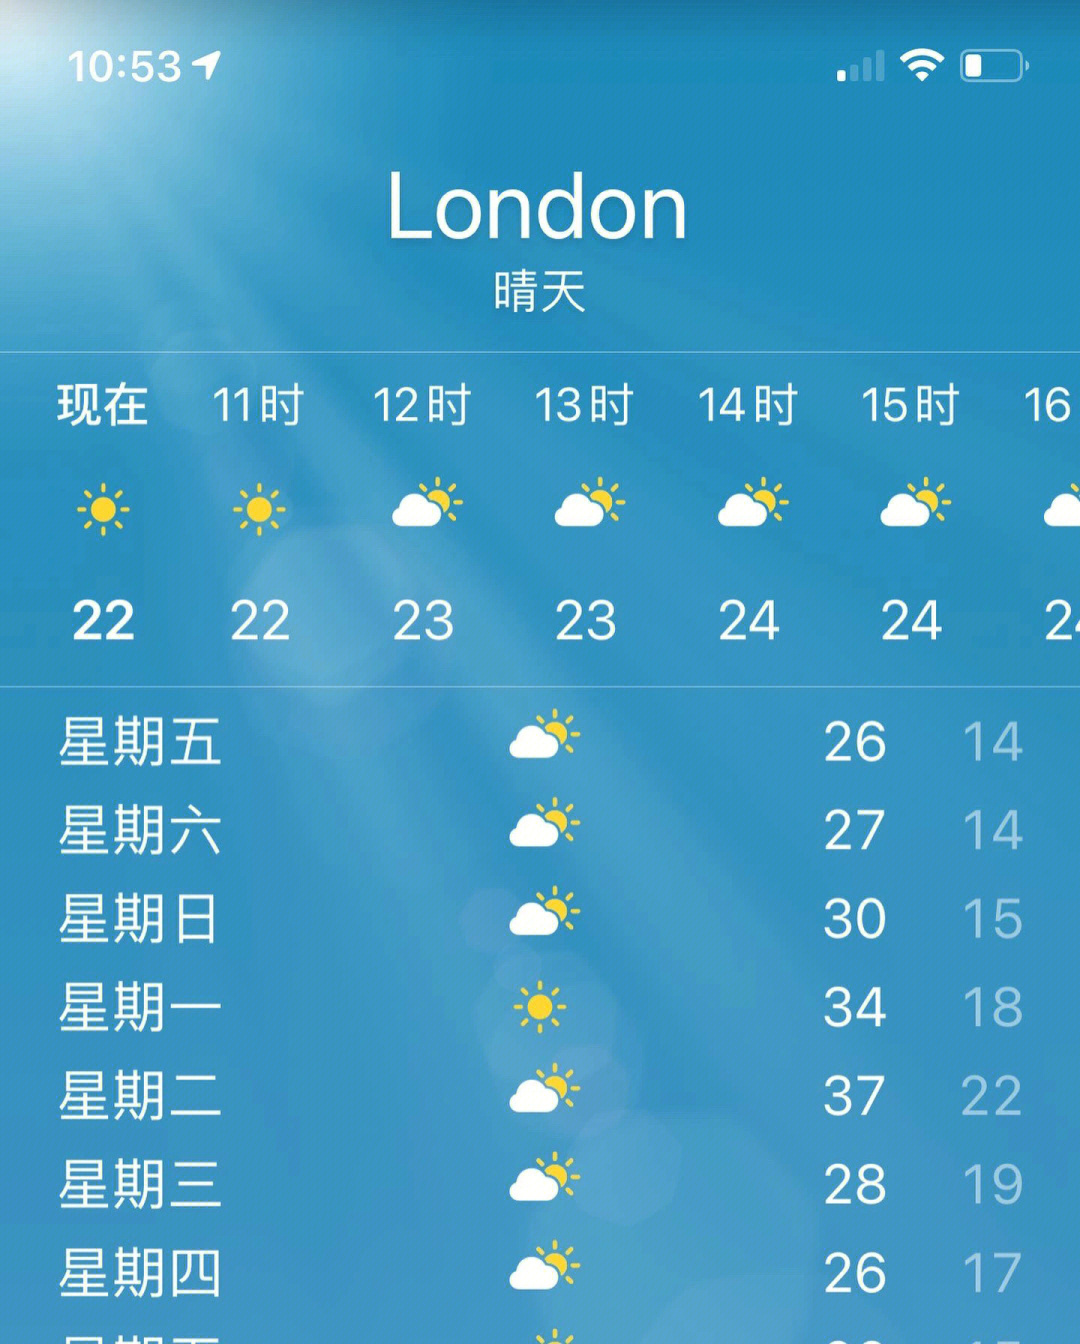 就问伦敦的温度可以多疯狂